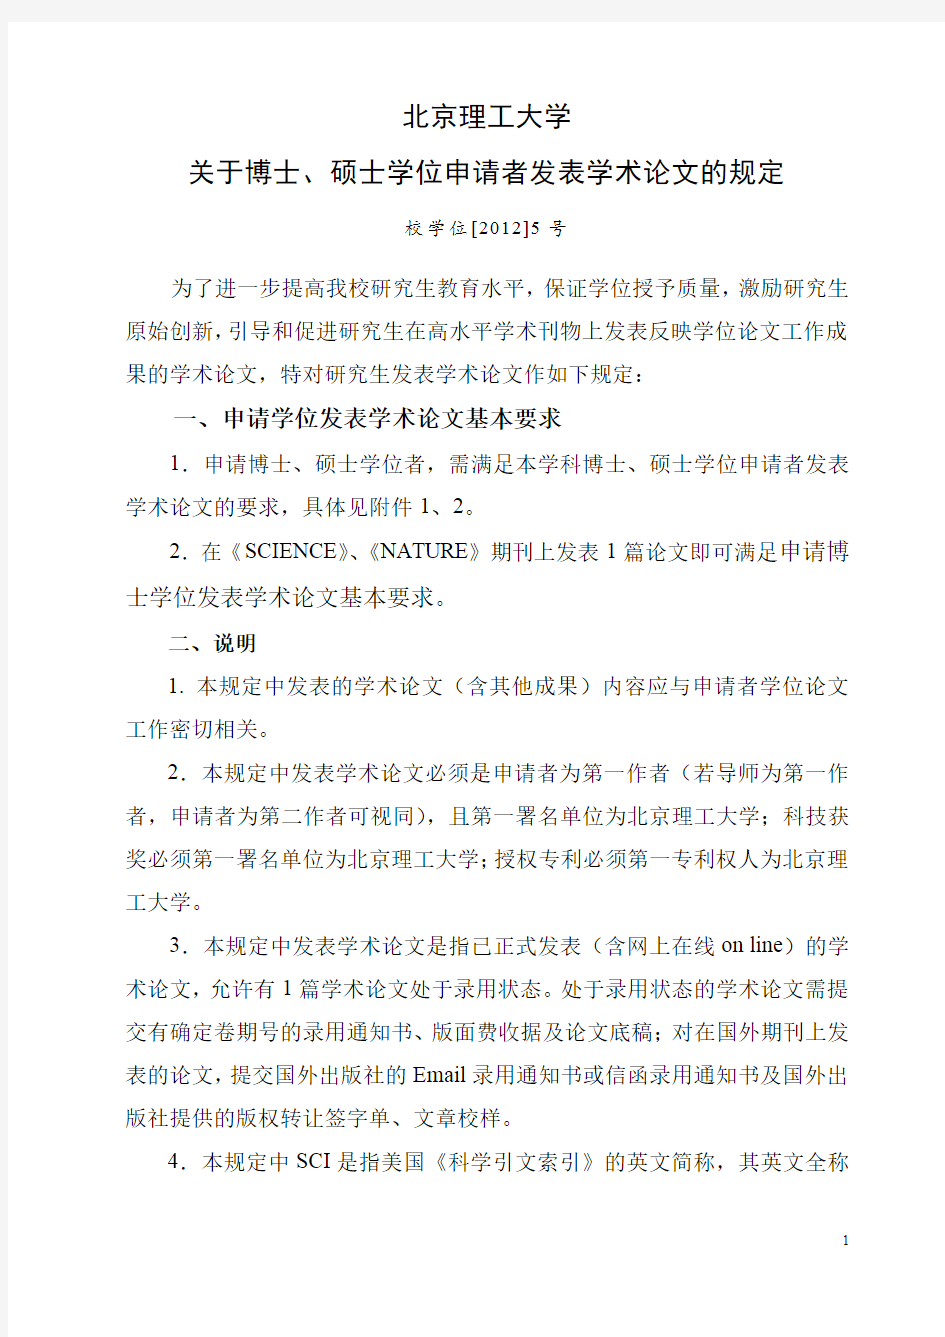 北京理工大学关于博士、硕士学位申请者发表学术论文的规定